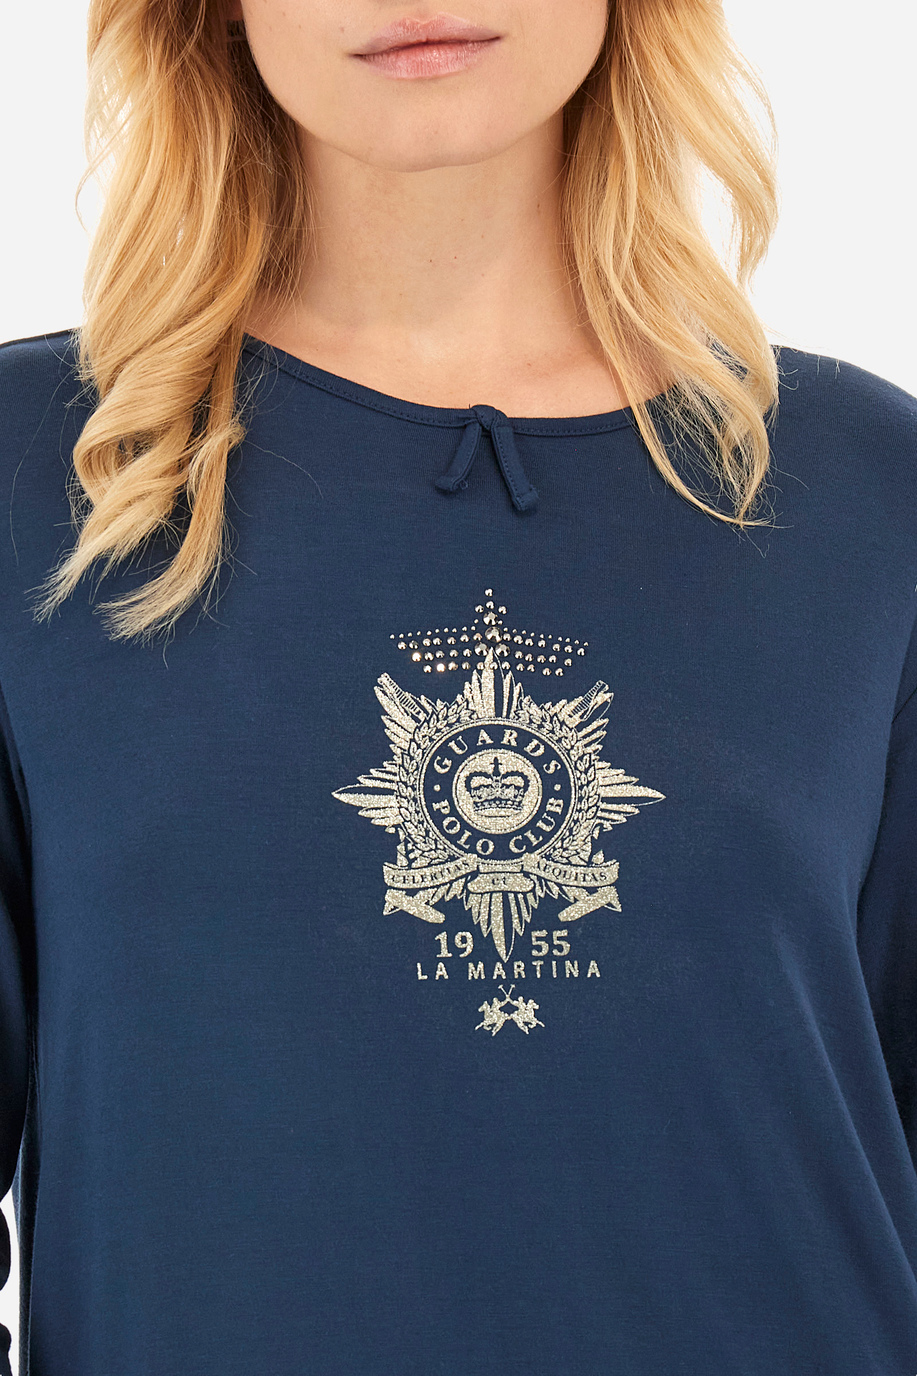 Tee-shirt femme coupe classique - Wyetta - Des cadeaux exceptionnels pour elle | La Martina - Official Online Shop